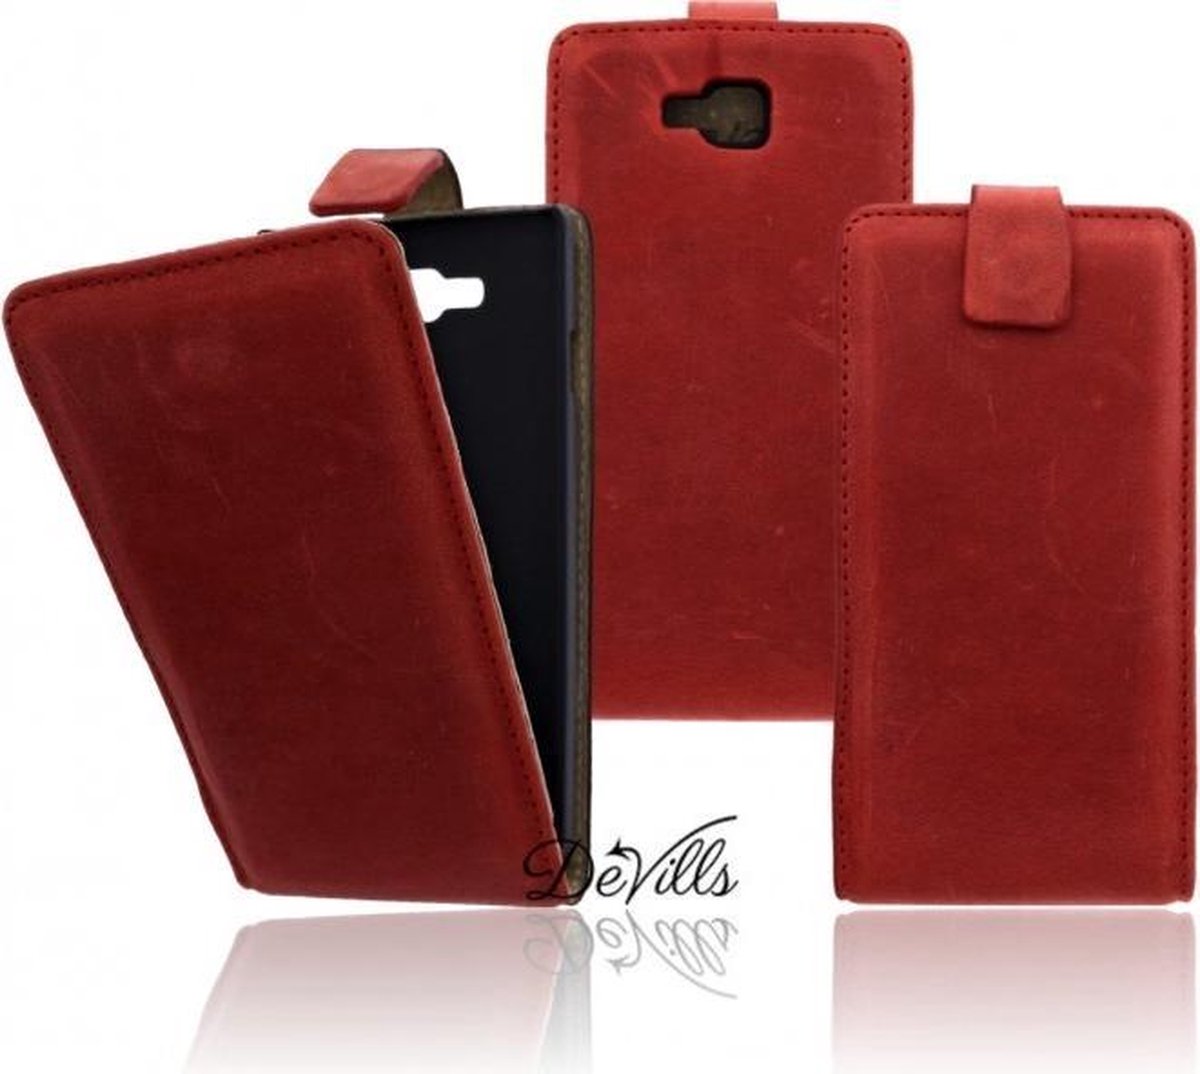 Devills Crazy Lederen Flip Case LG Optimus L9 2 Hoesje Crazy Red